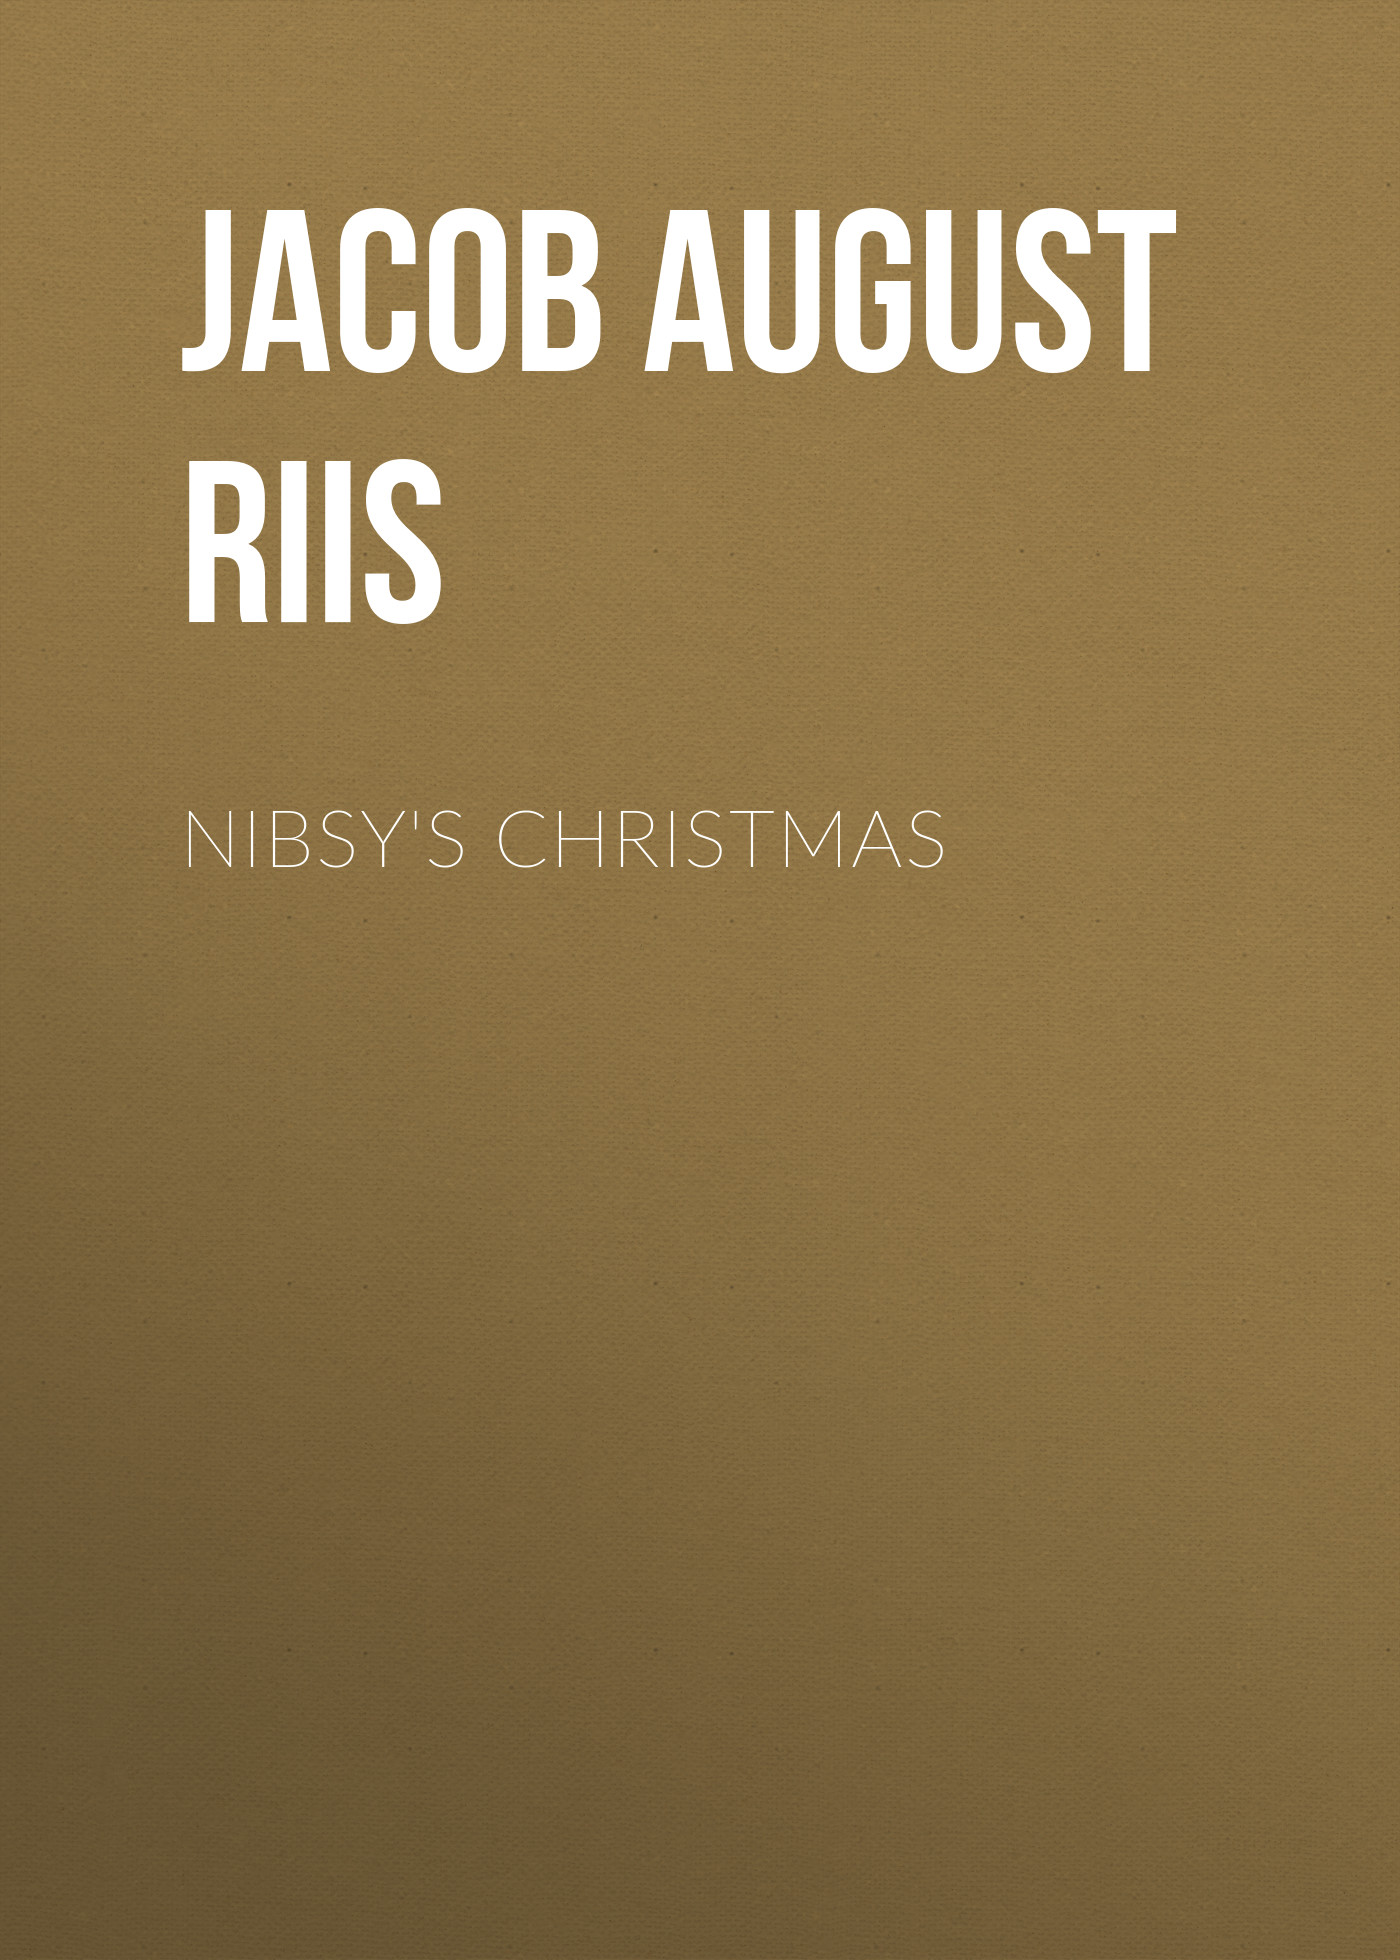 Книга Nibsy's Christmas из серии , созданная Jacob August Riis, может относится к жанру Зарубежная классика, Социология, Зарубежная старинная литература. Стоимость книги Nibsy's Christmas  с идентификатором 35008433 составляет 0 руб.